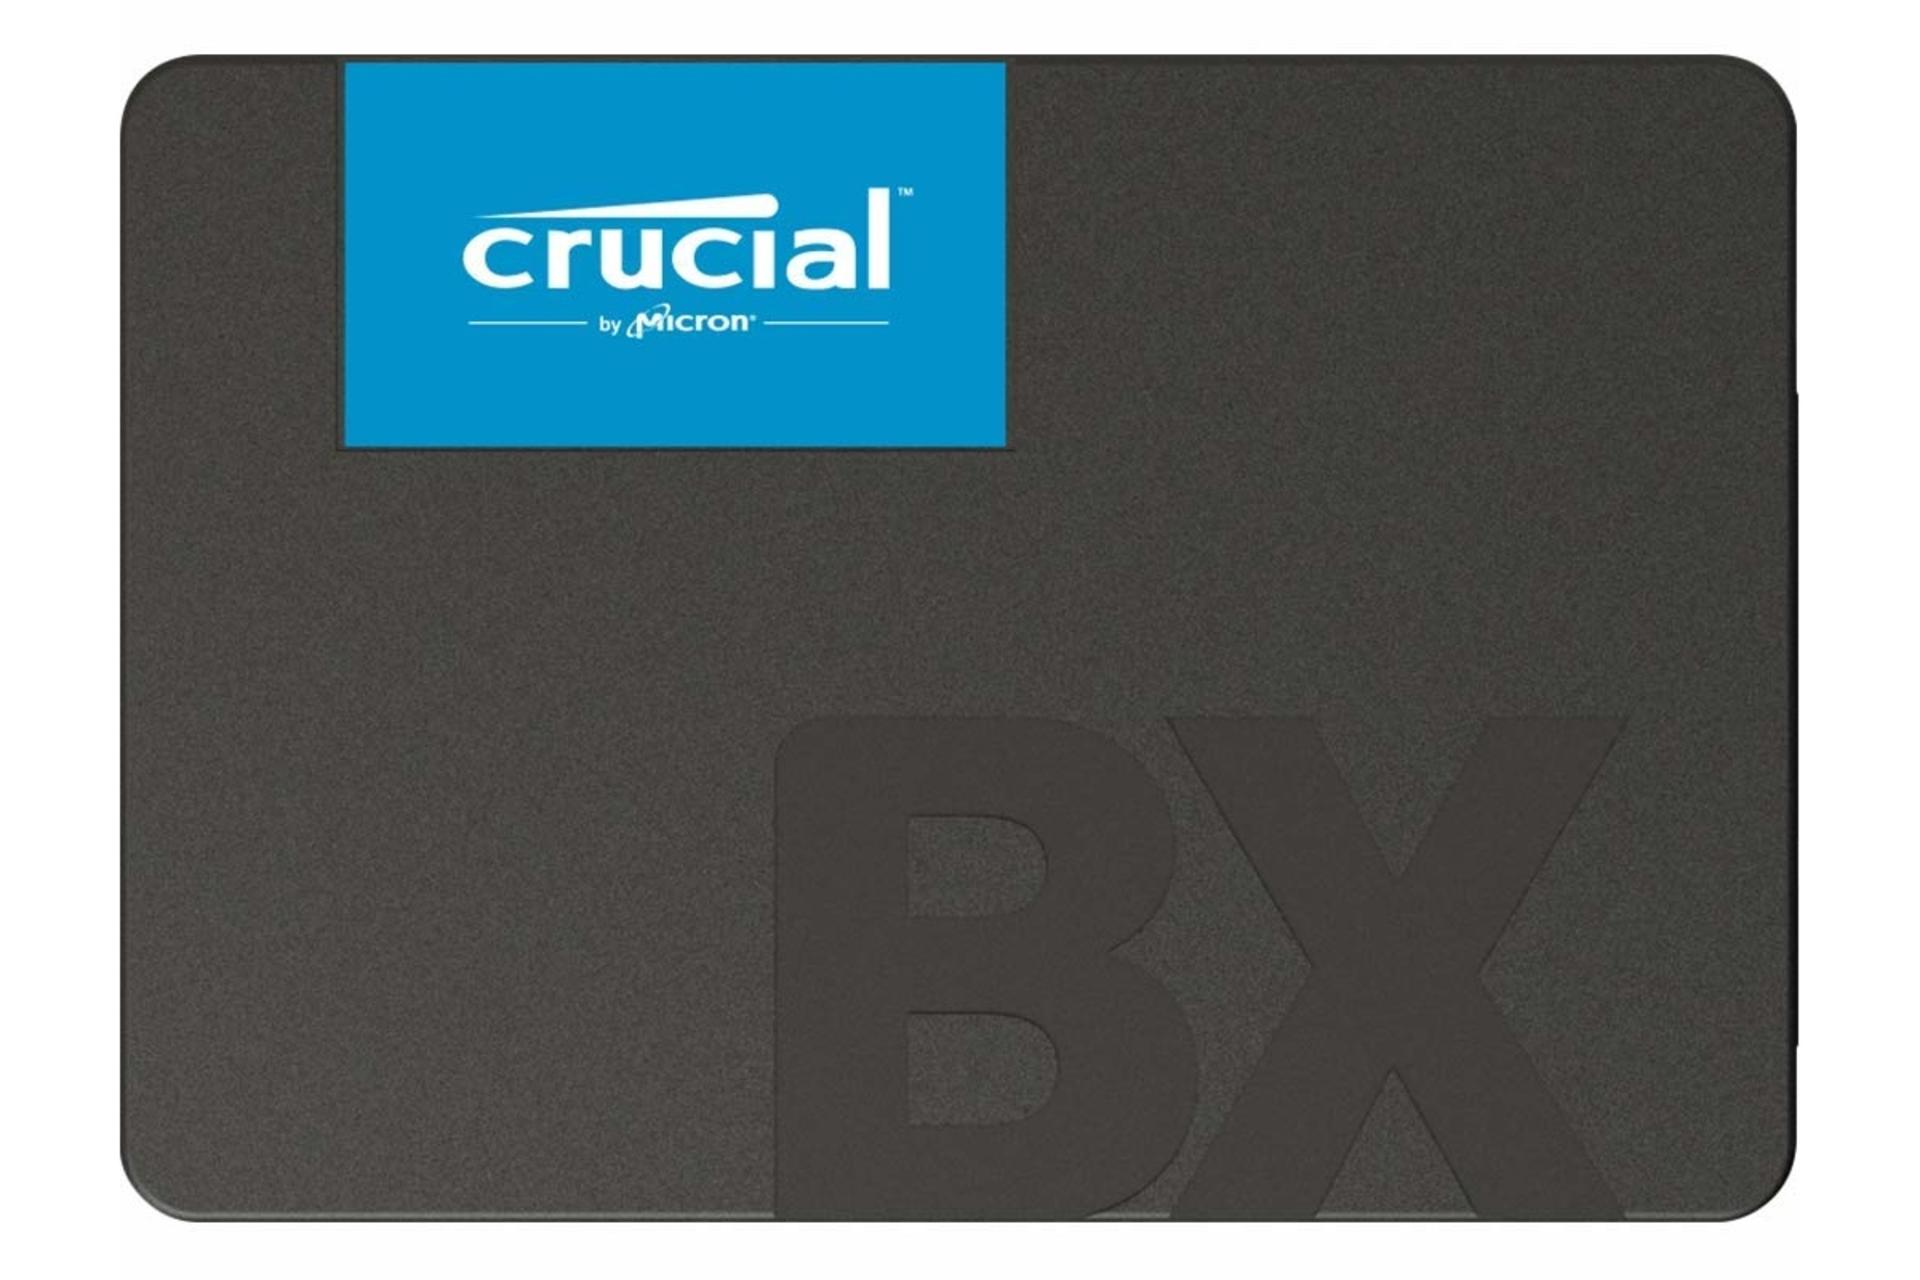 مرجع متخصصين ايران نماي روبرو SSD كروشيال Crucial BX500 SATA 2.5 Inch